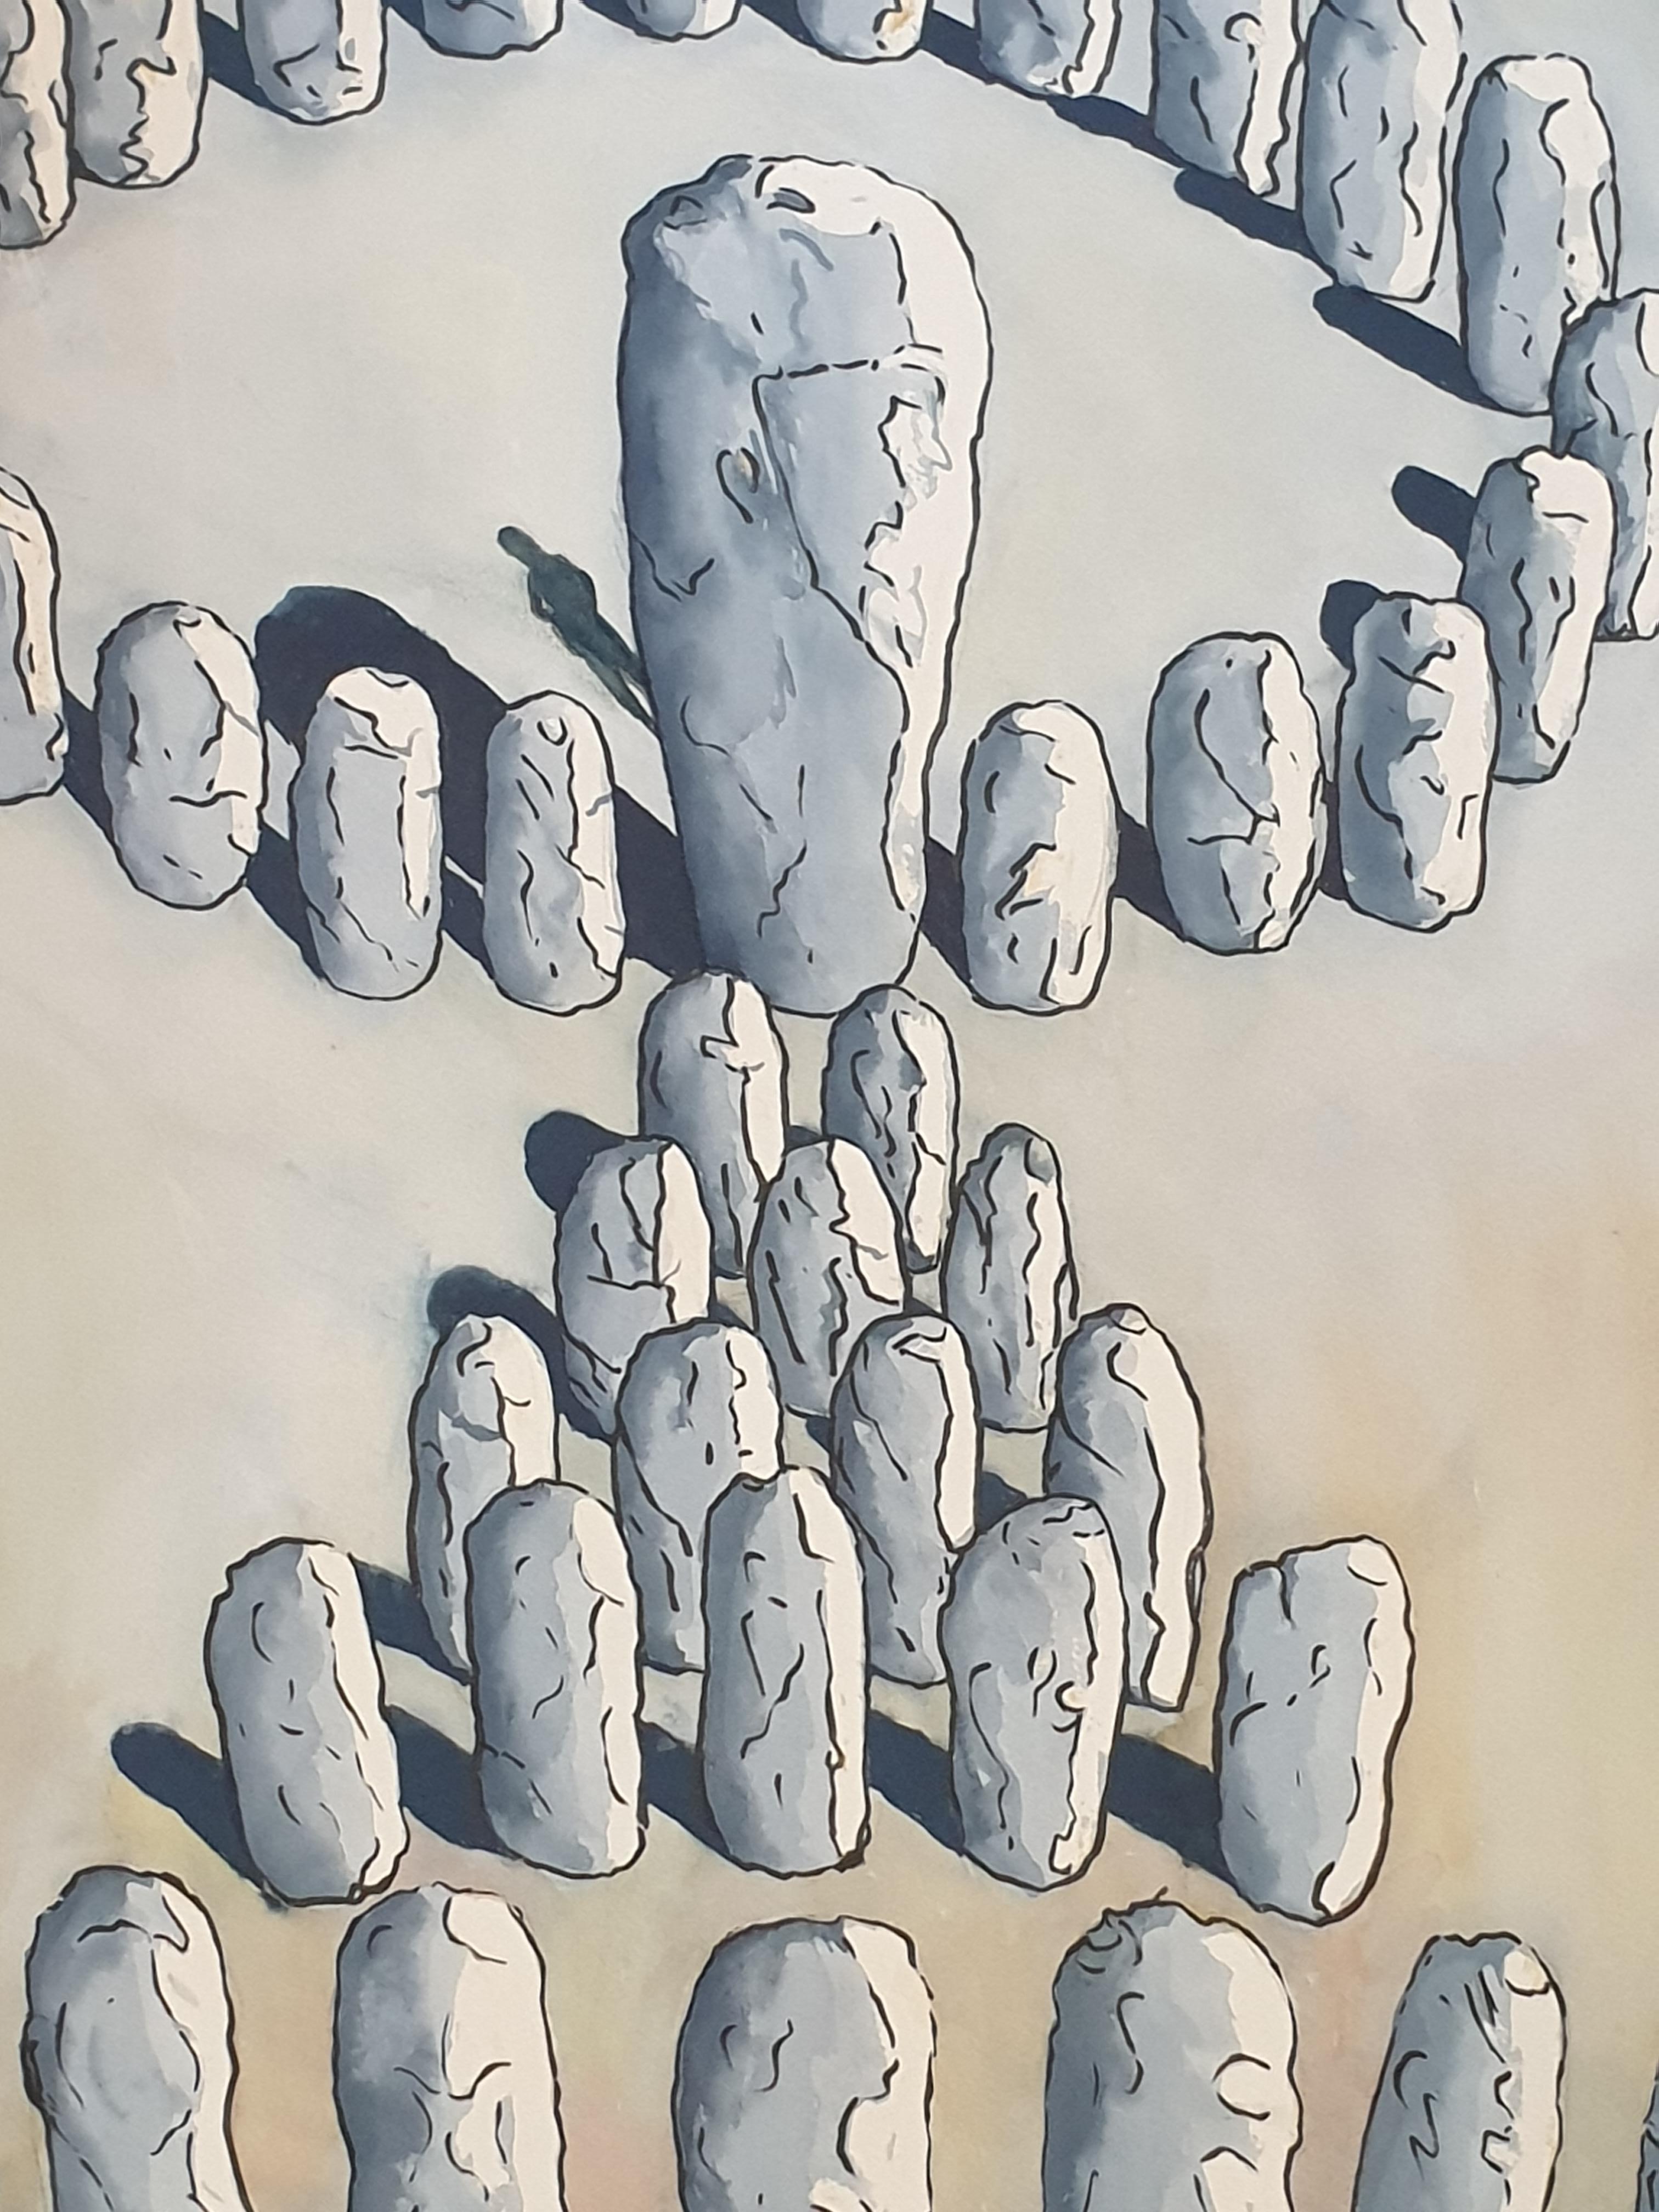 Surrealistisches Acryl auf Papier des britischen Künstlers Derek Carruthers. Unten rechts signiert DC und auf der Rückseite signiert, datiert und betitelt '43 Stones'.

Ein faszinierendes und grafisches Gemälde einer Stonehenge-ähnlichen Struktur.